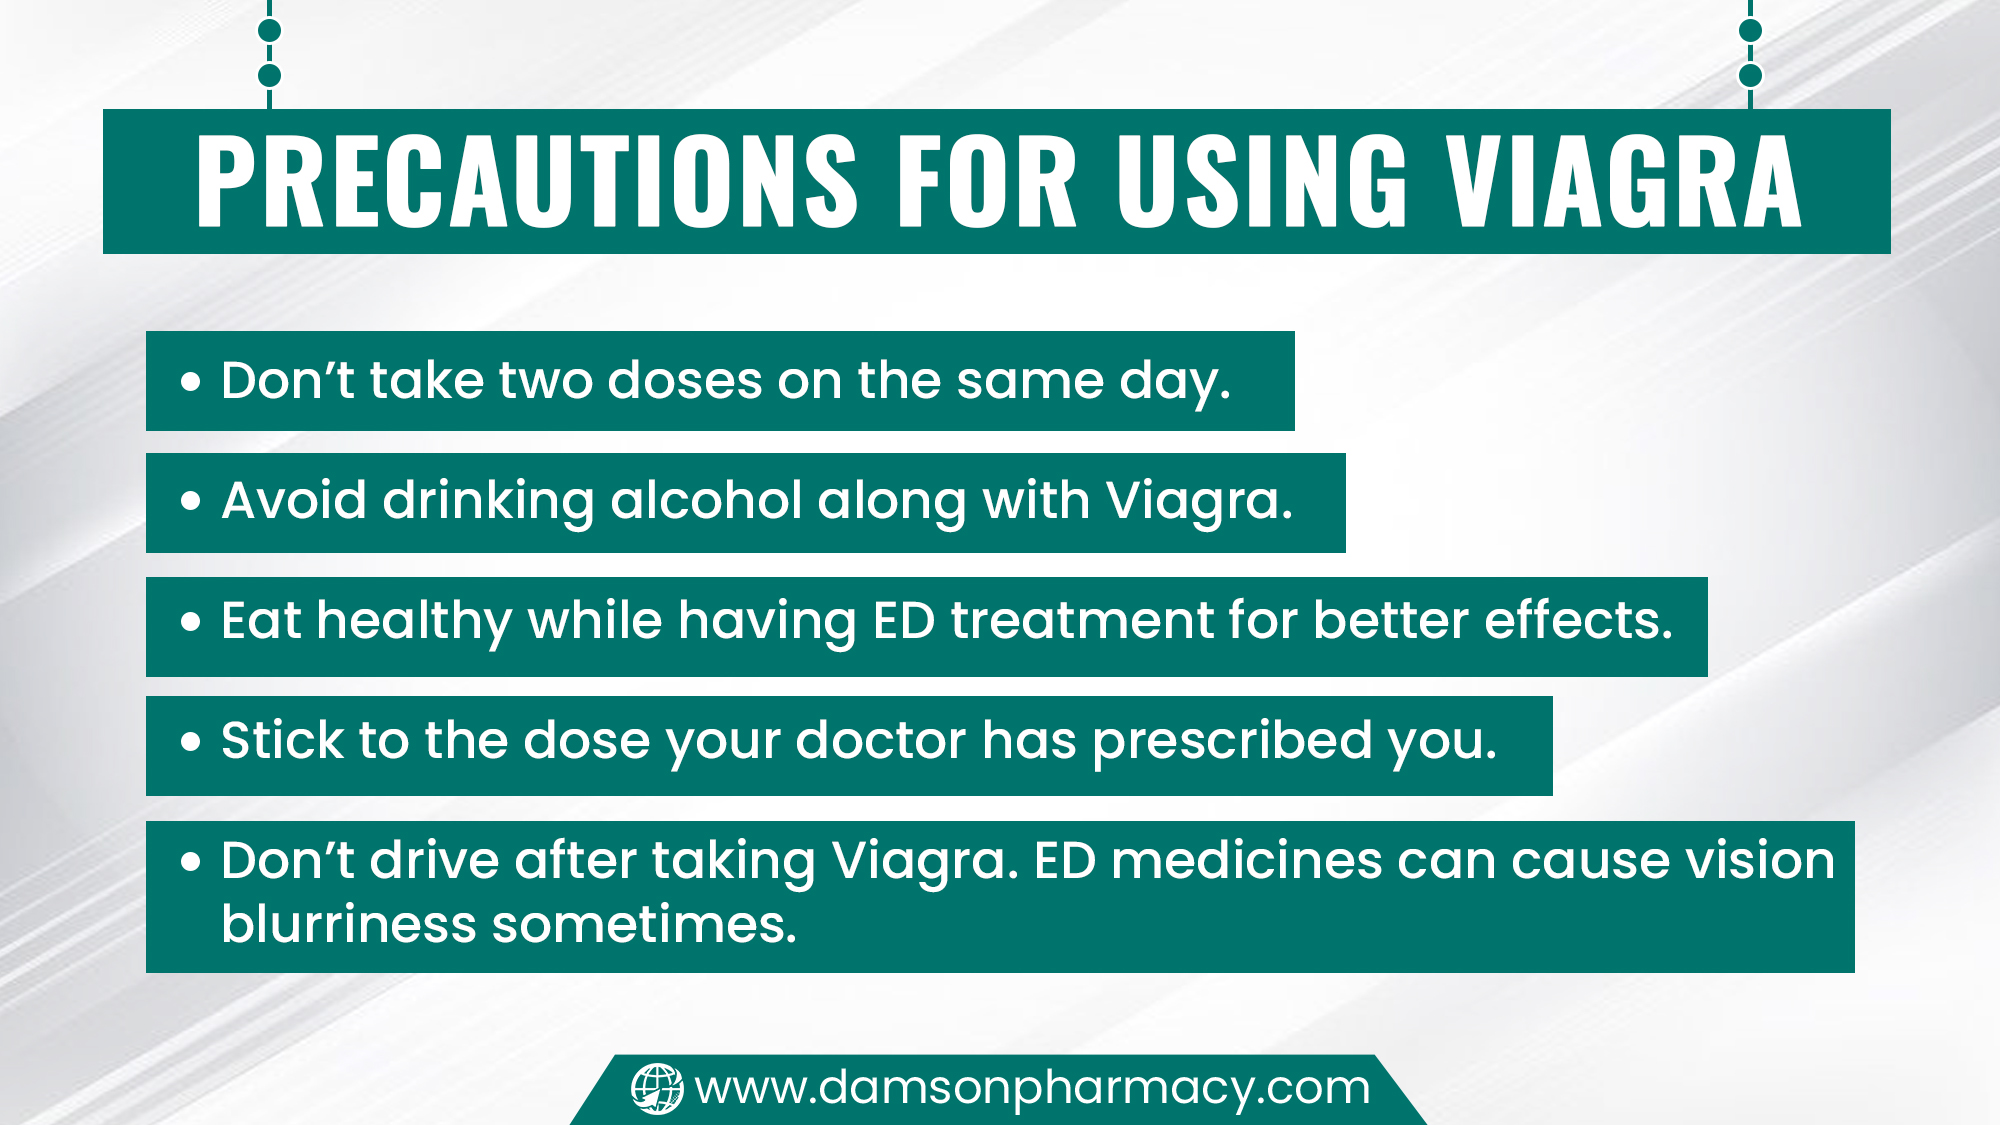 Precautions for Using Viagra